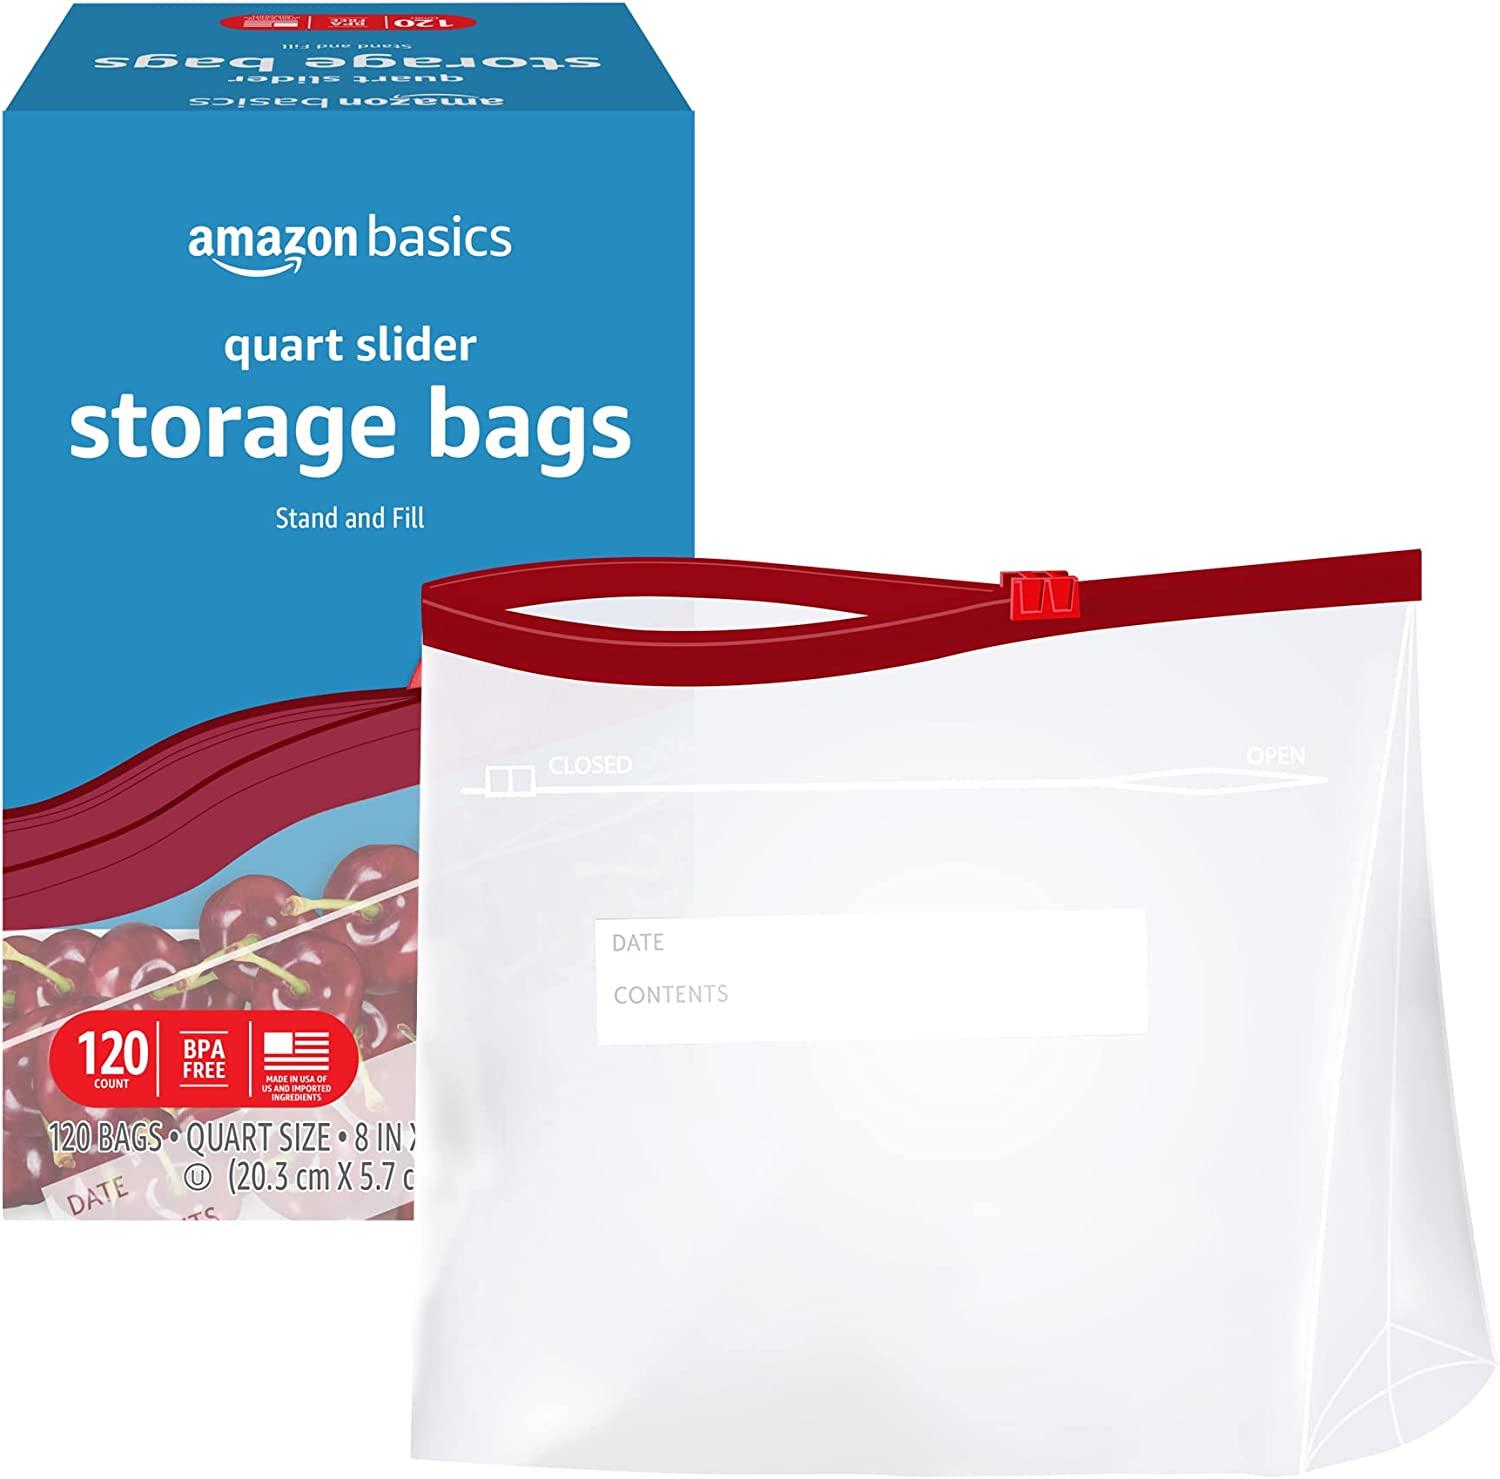 Amazon Basics Quart Slider Food Storage Bags 120 Set for $7.29 Shipped